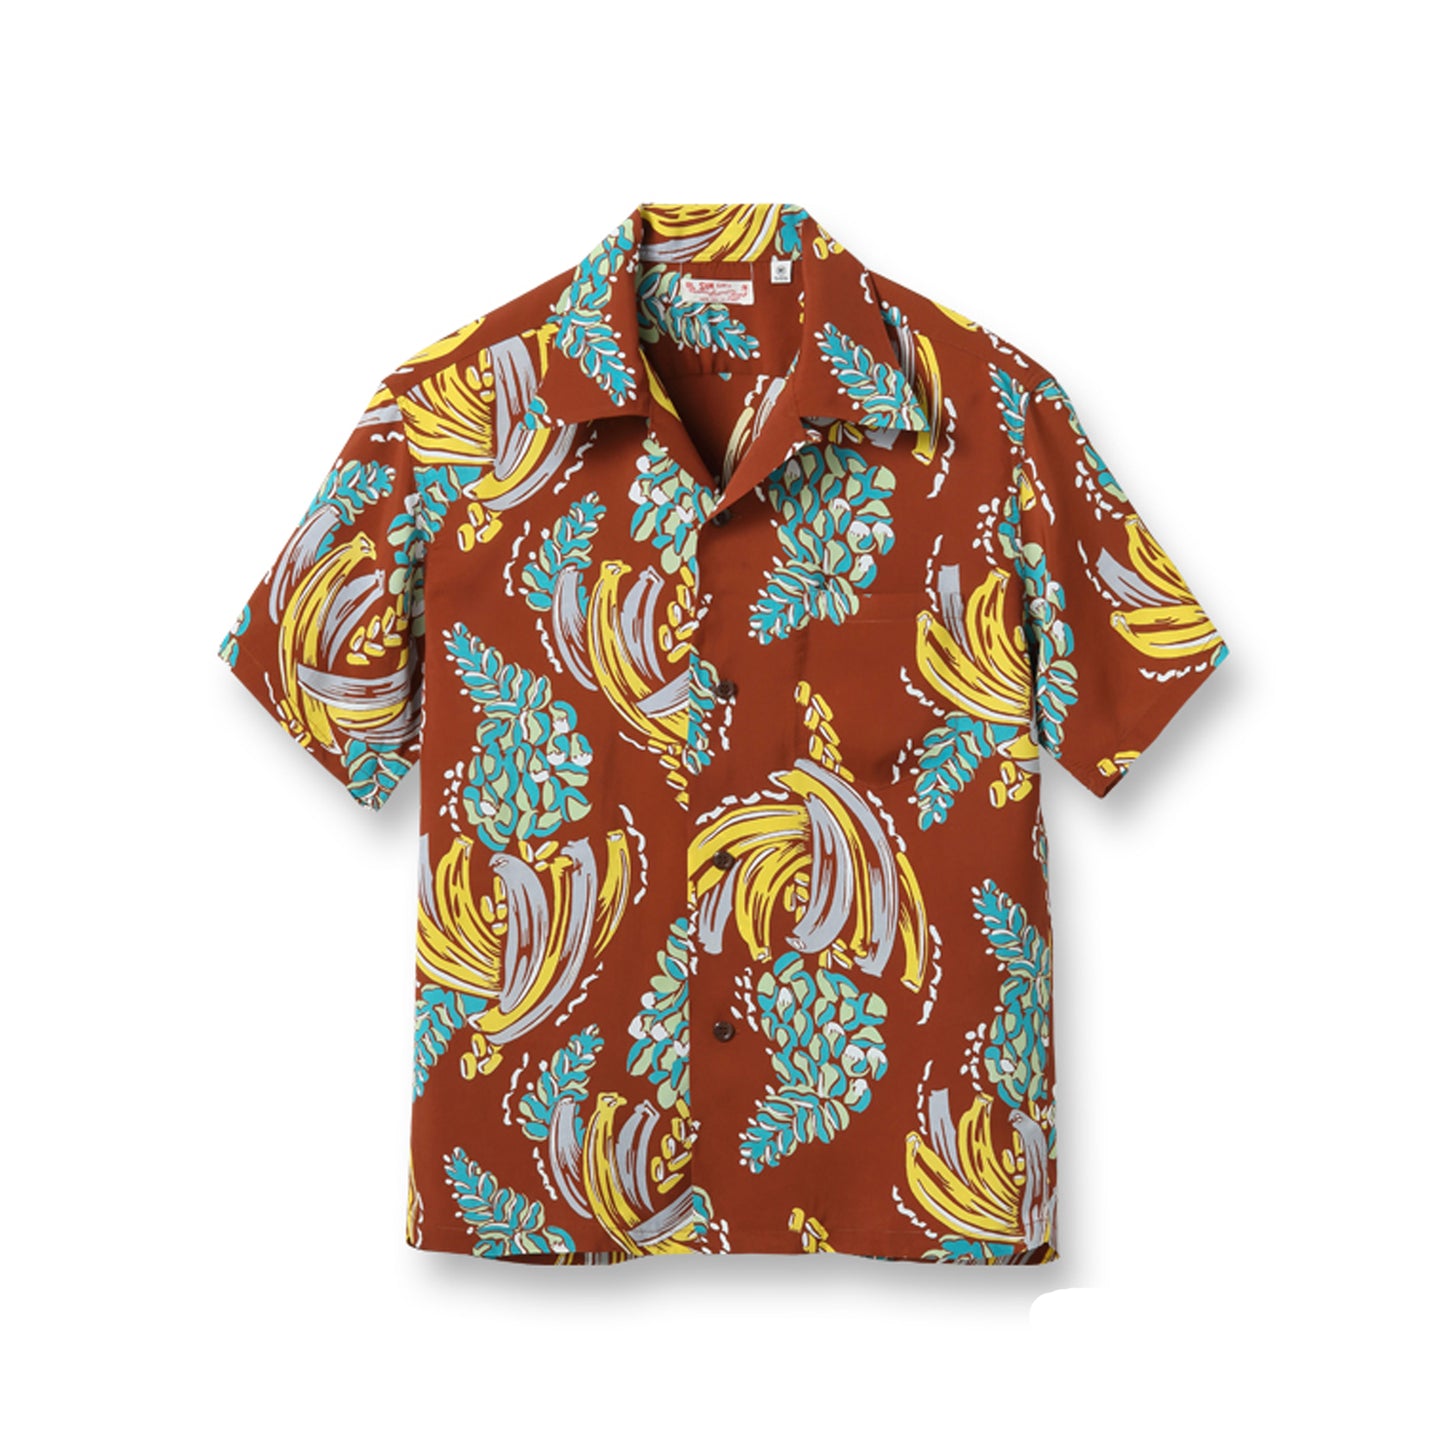 Sun Surf Hawaiian Shirt “Banana Harvest” Brown